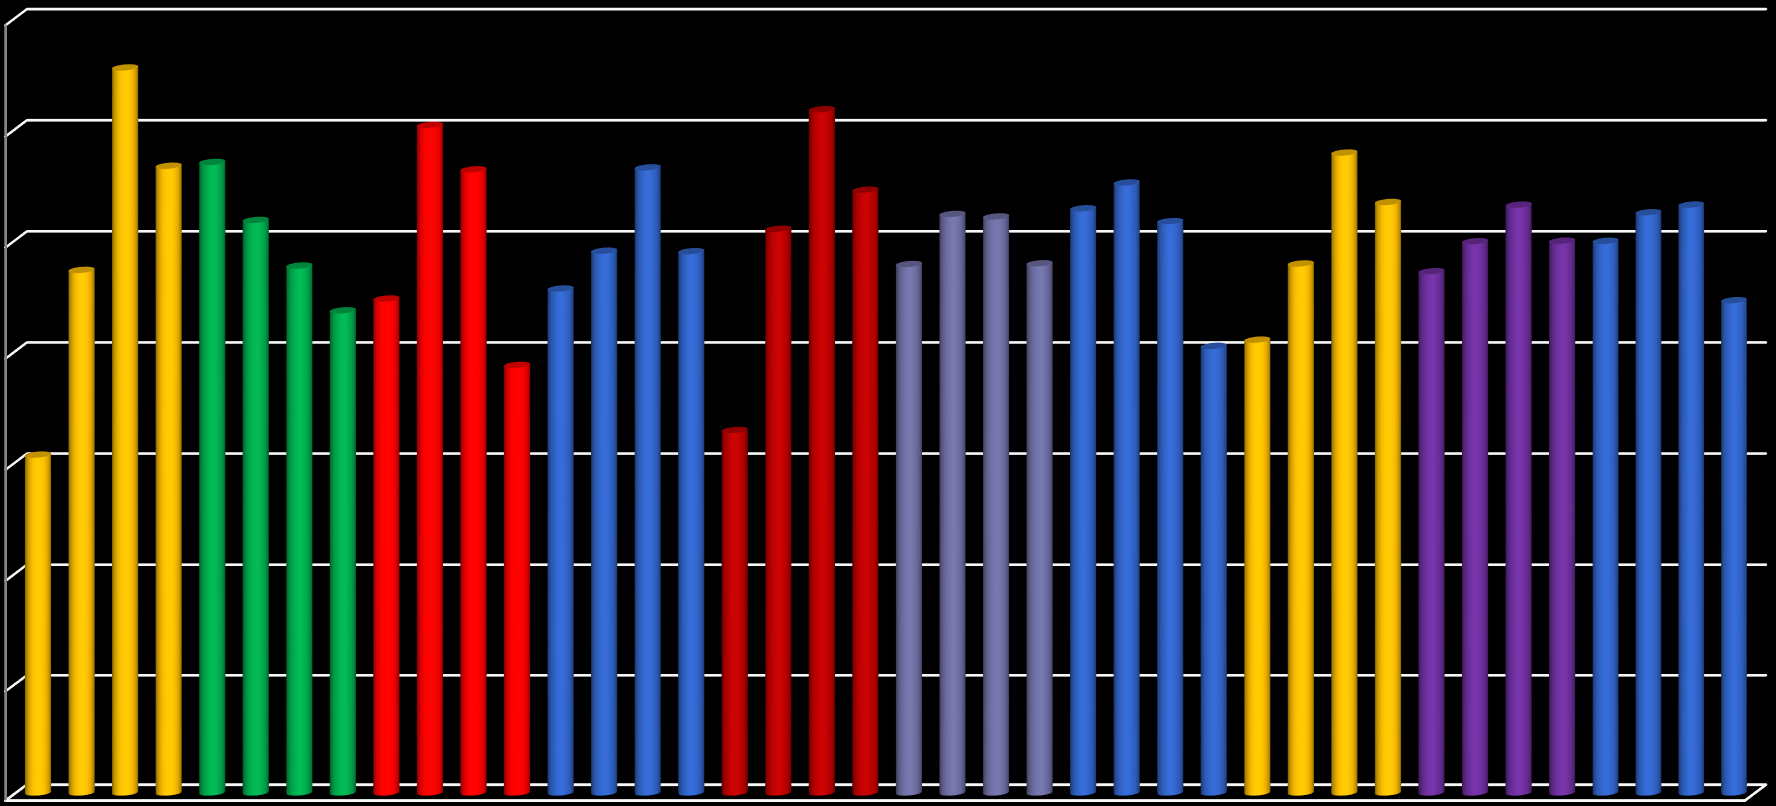 Sezonowy rozkład przychodów ze sprzedaży w poszczególnych kwartałach w latach 2006-2015 [% udział w